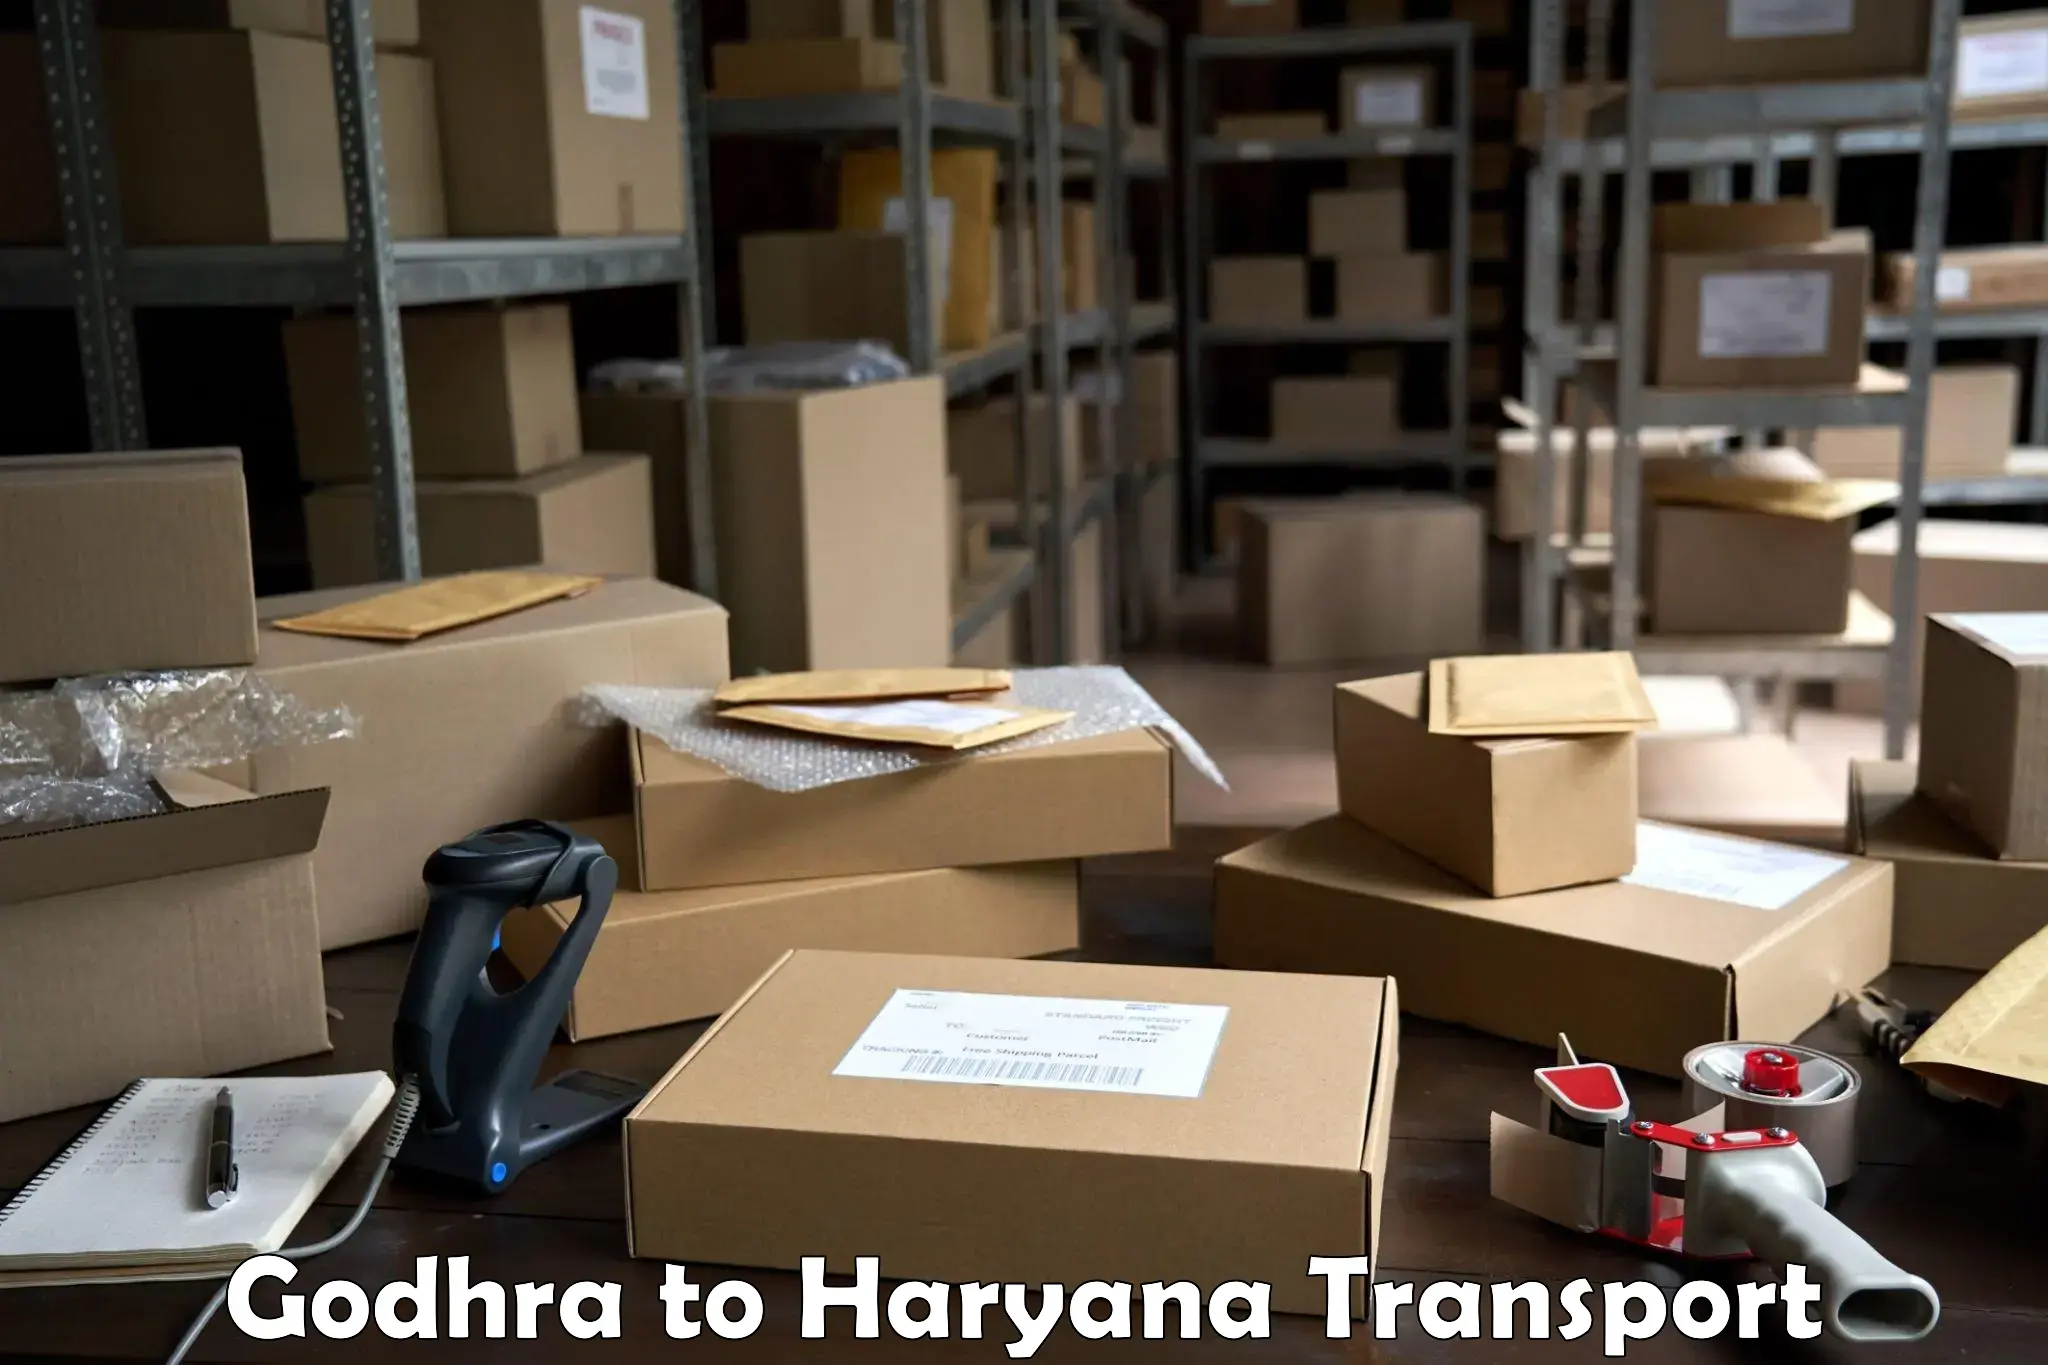 Lorry transport service Godhra to Kurukshetra